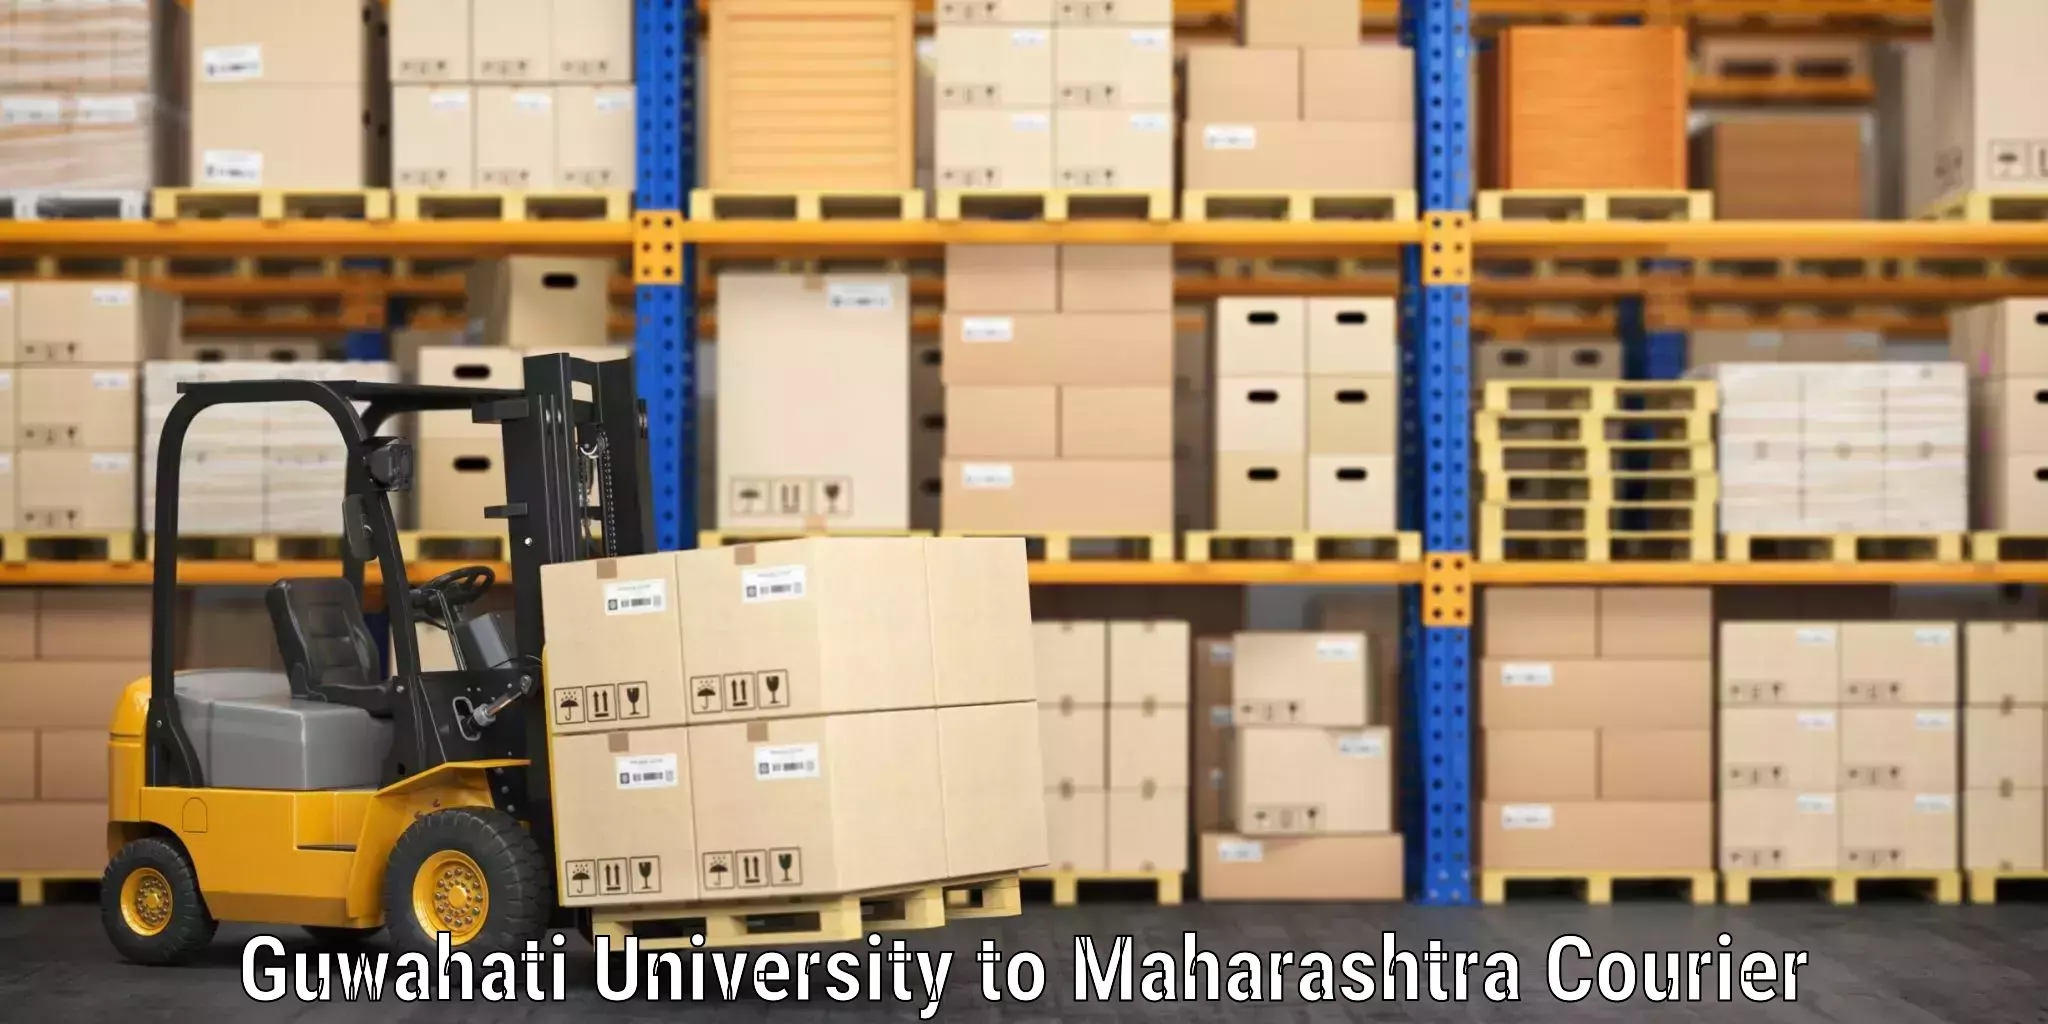 Luggage transit service Guwahati University to Maharashtra